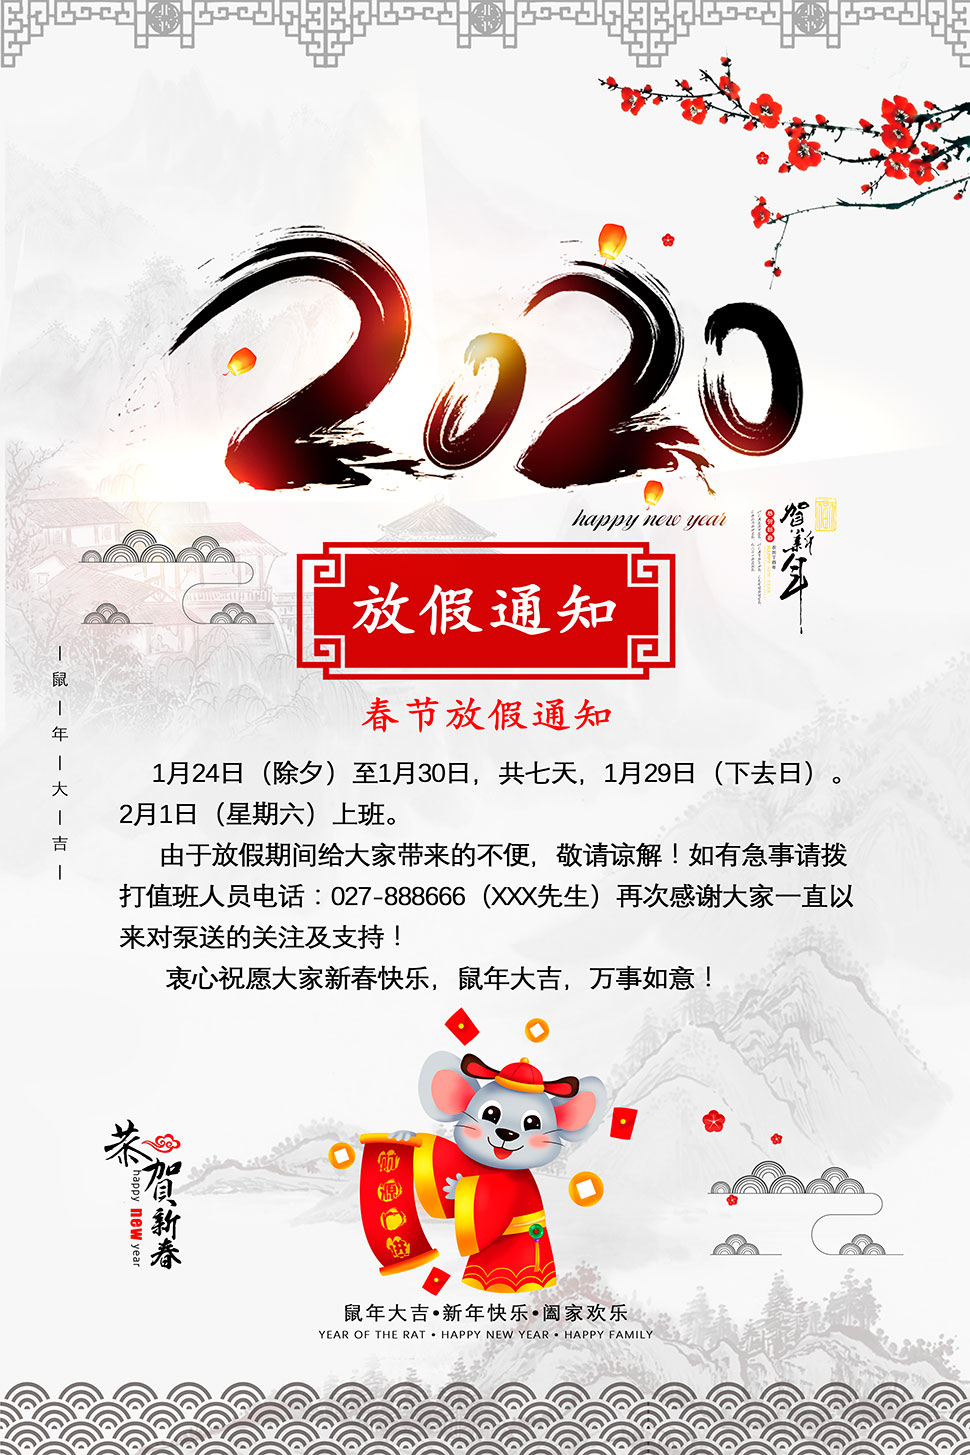 中国风企业放假通知海报设计PSD素材